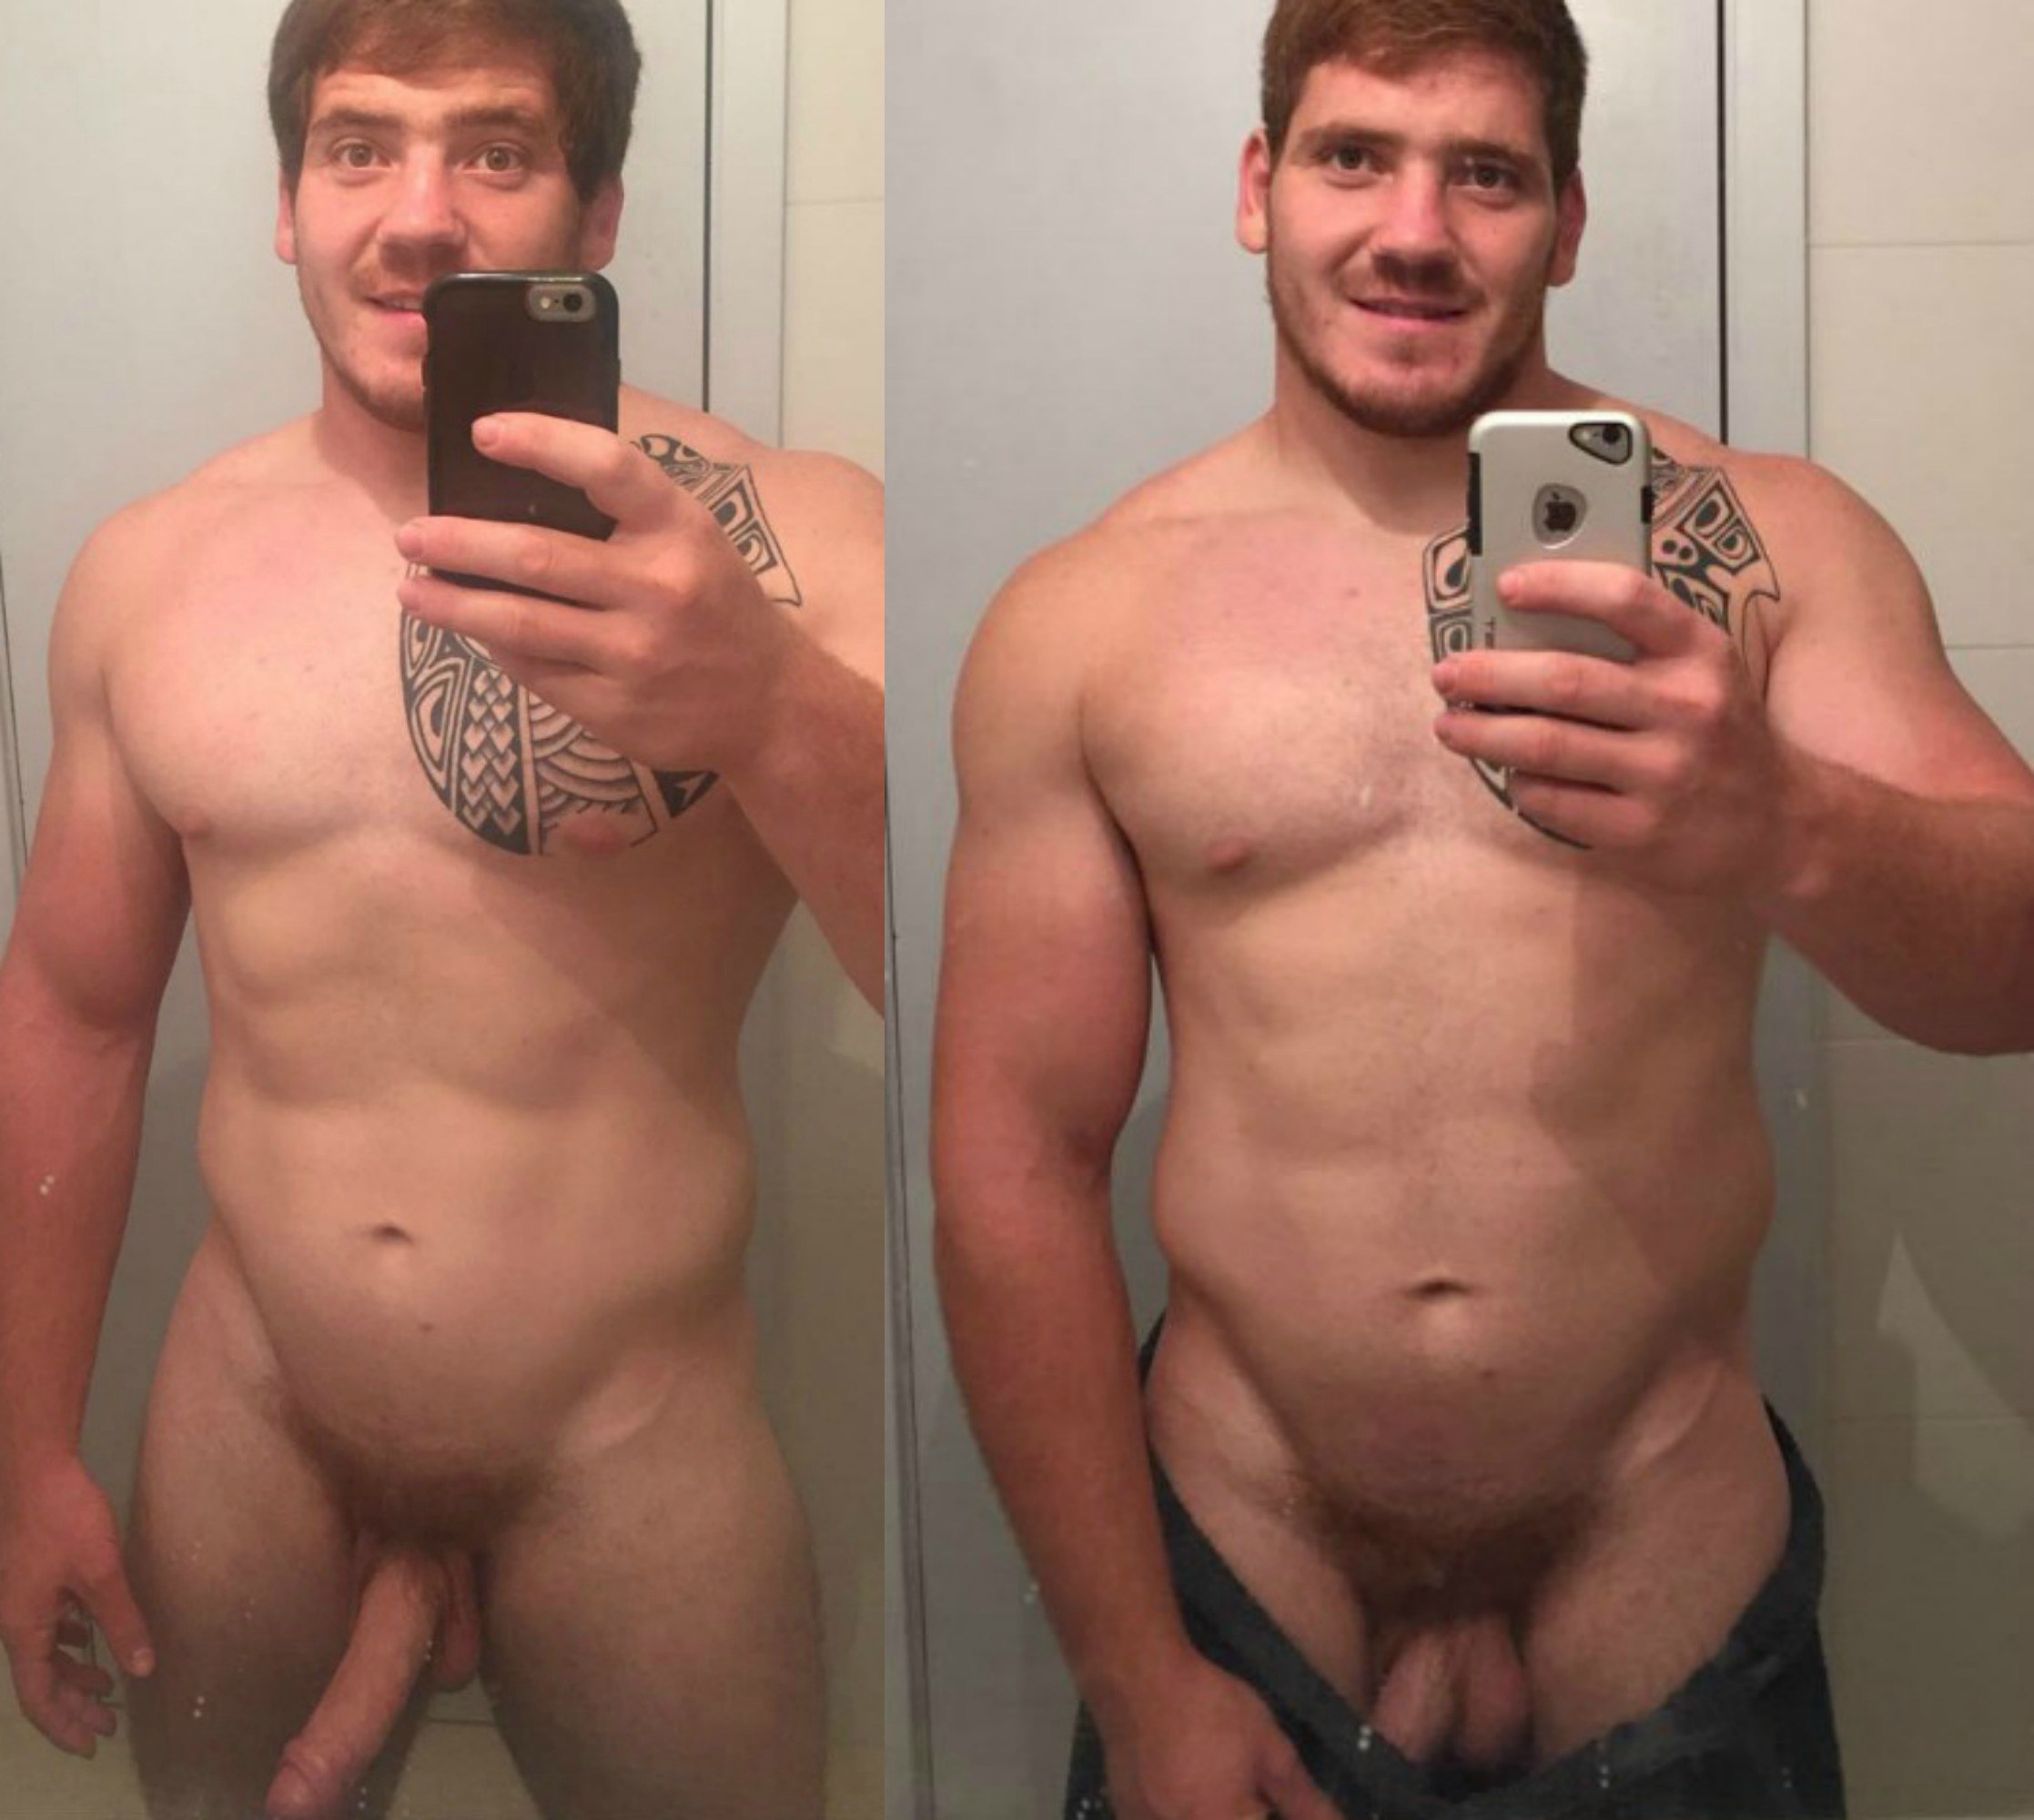 El jugador de rugby Andrés Enrique desnudo frente al espejo